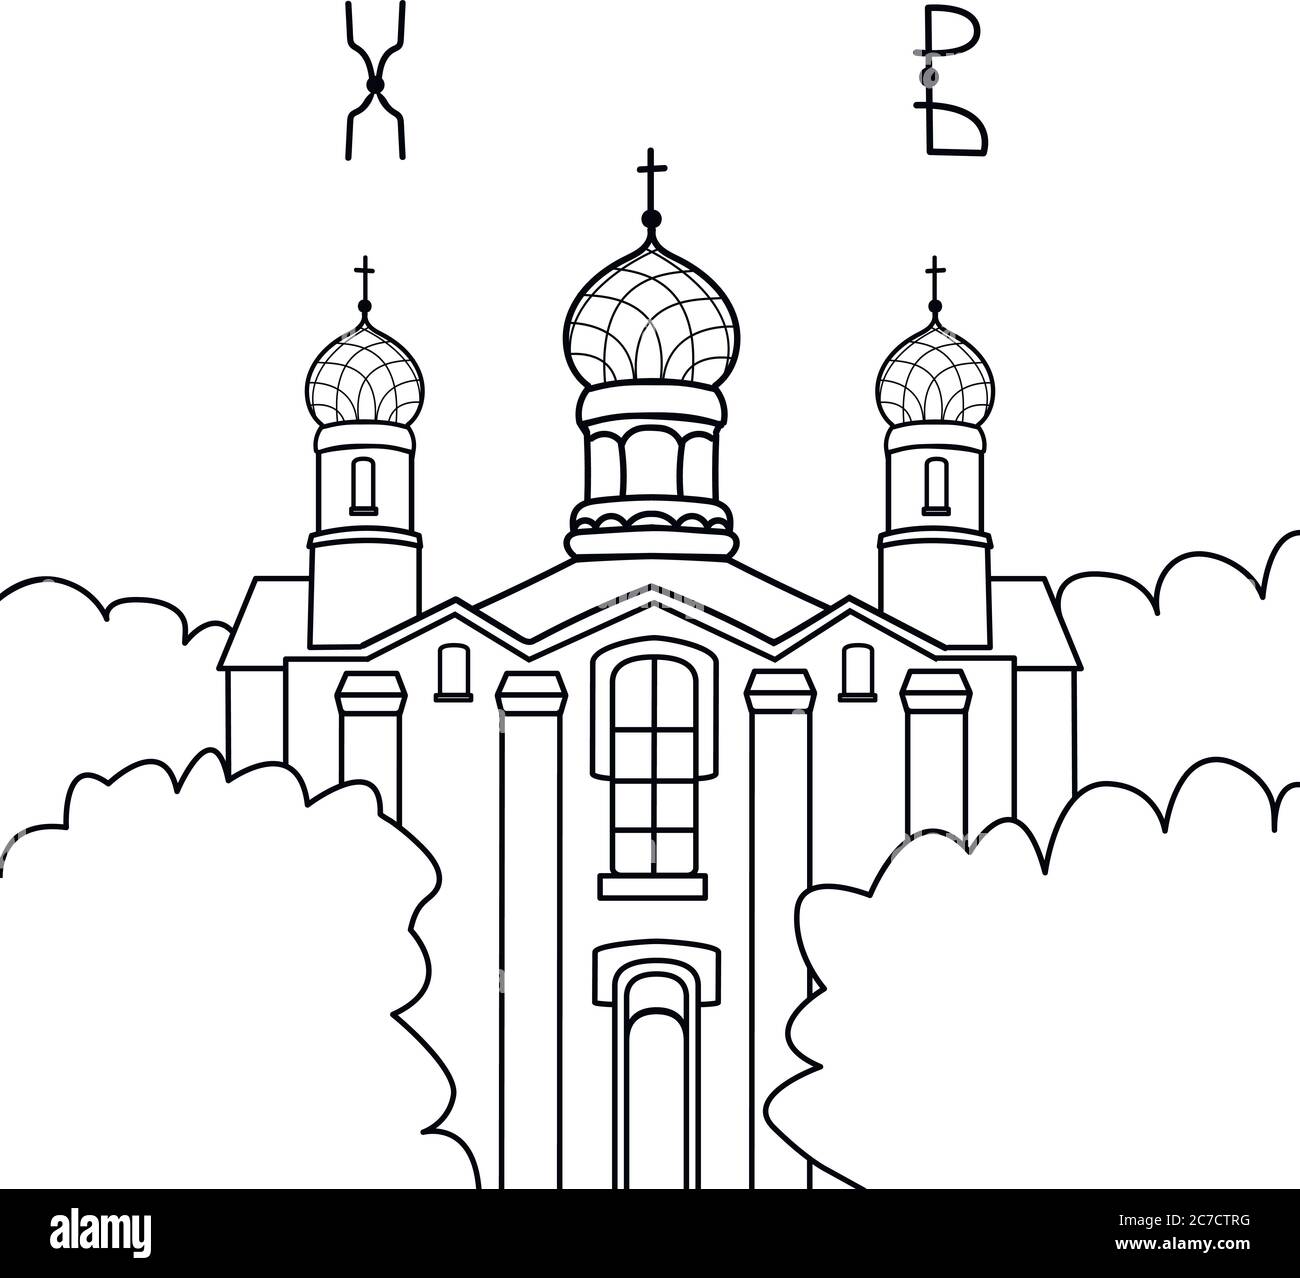 Vektor-Illustration einer flachen Kirche. Architektur des katholischen Glaubens mit Kreuz. Osterferien. Skizze Stock Vektor